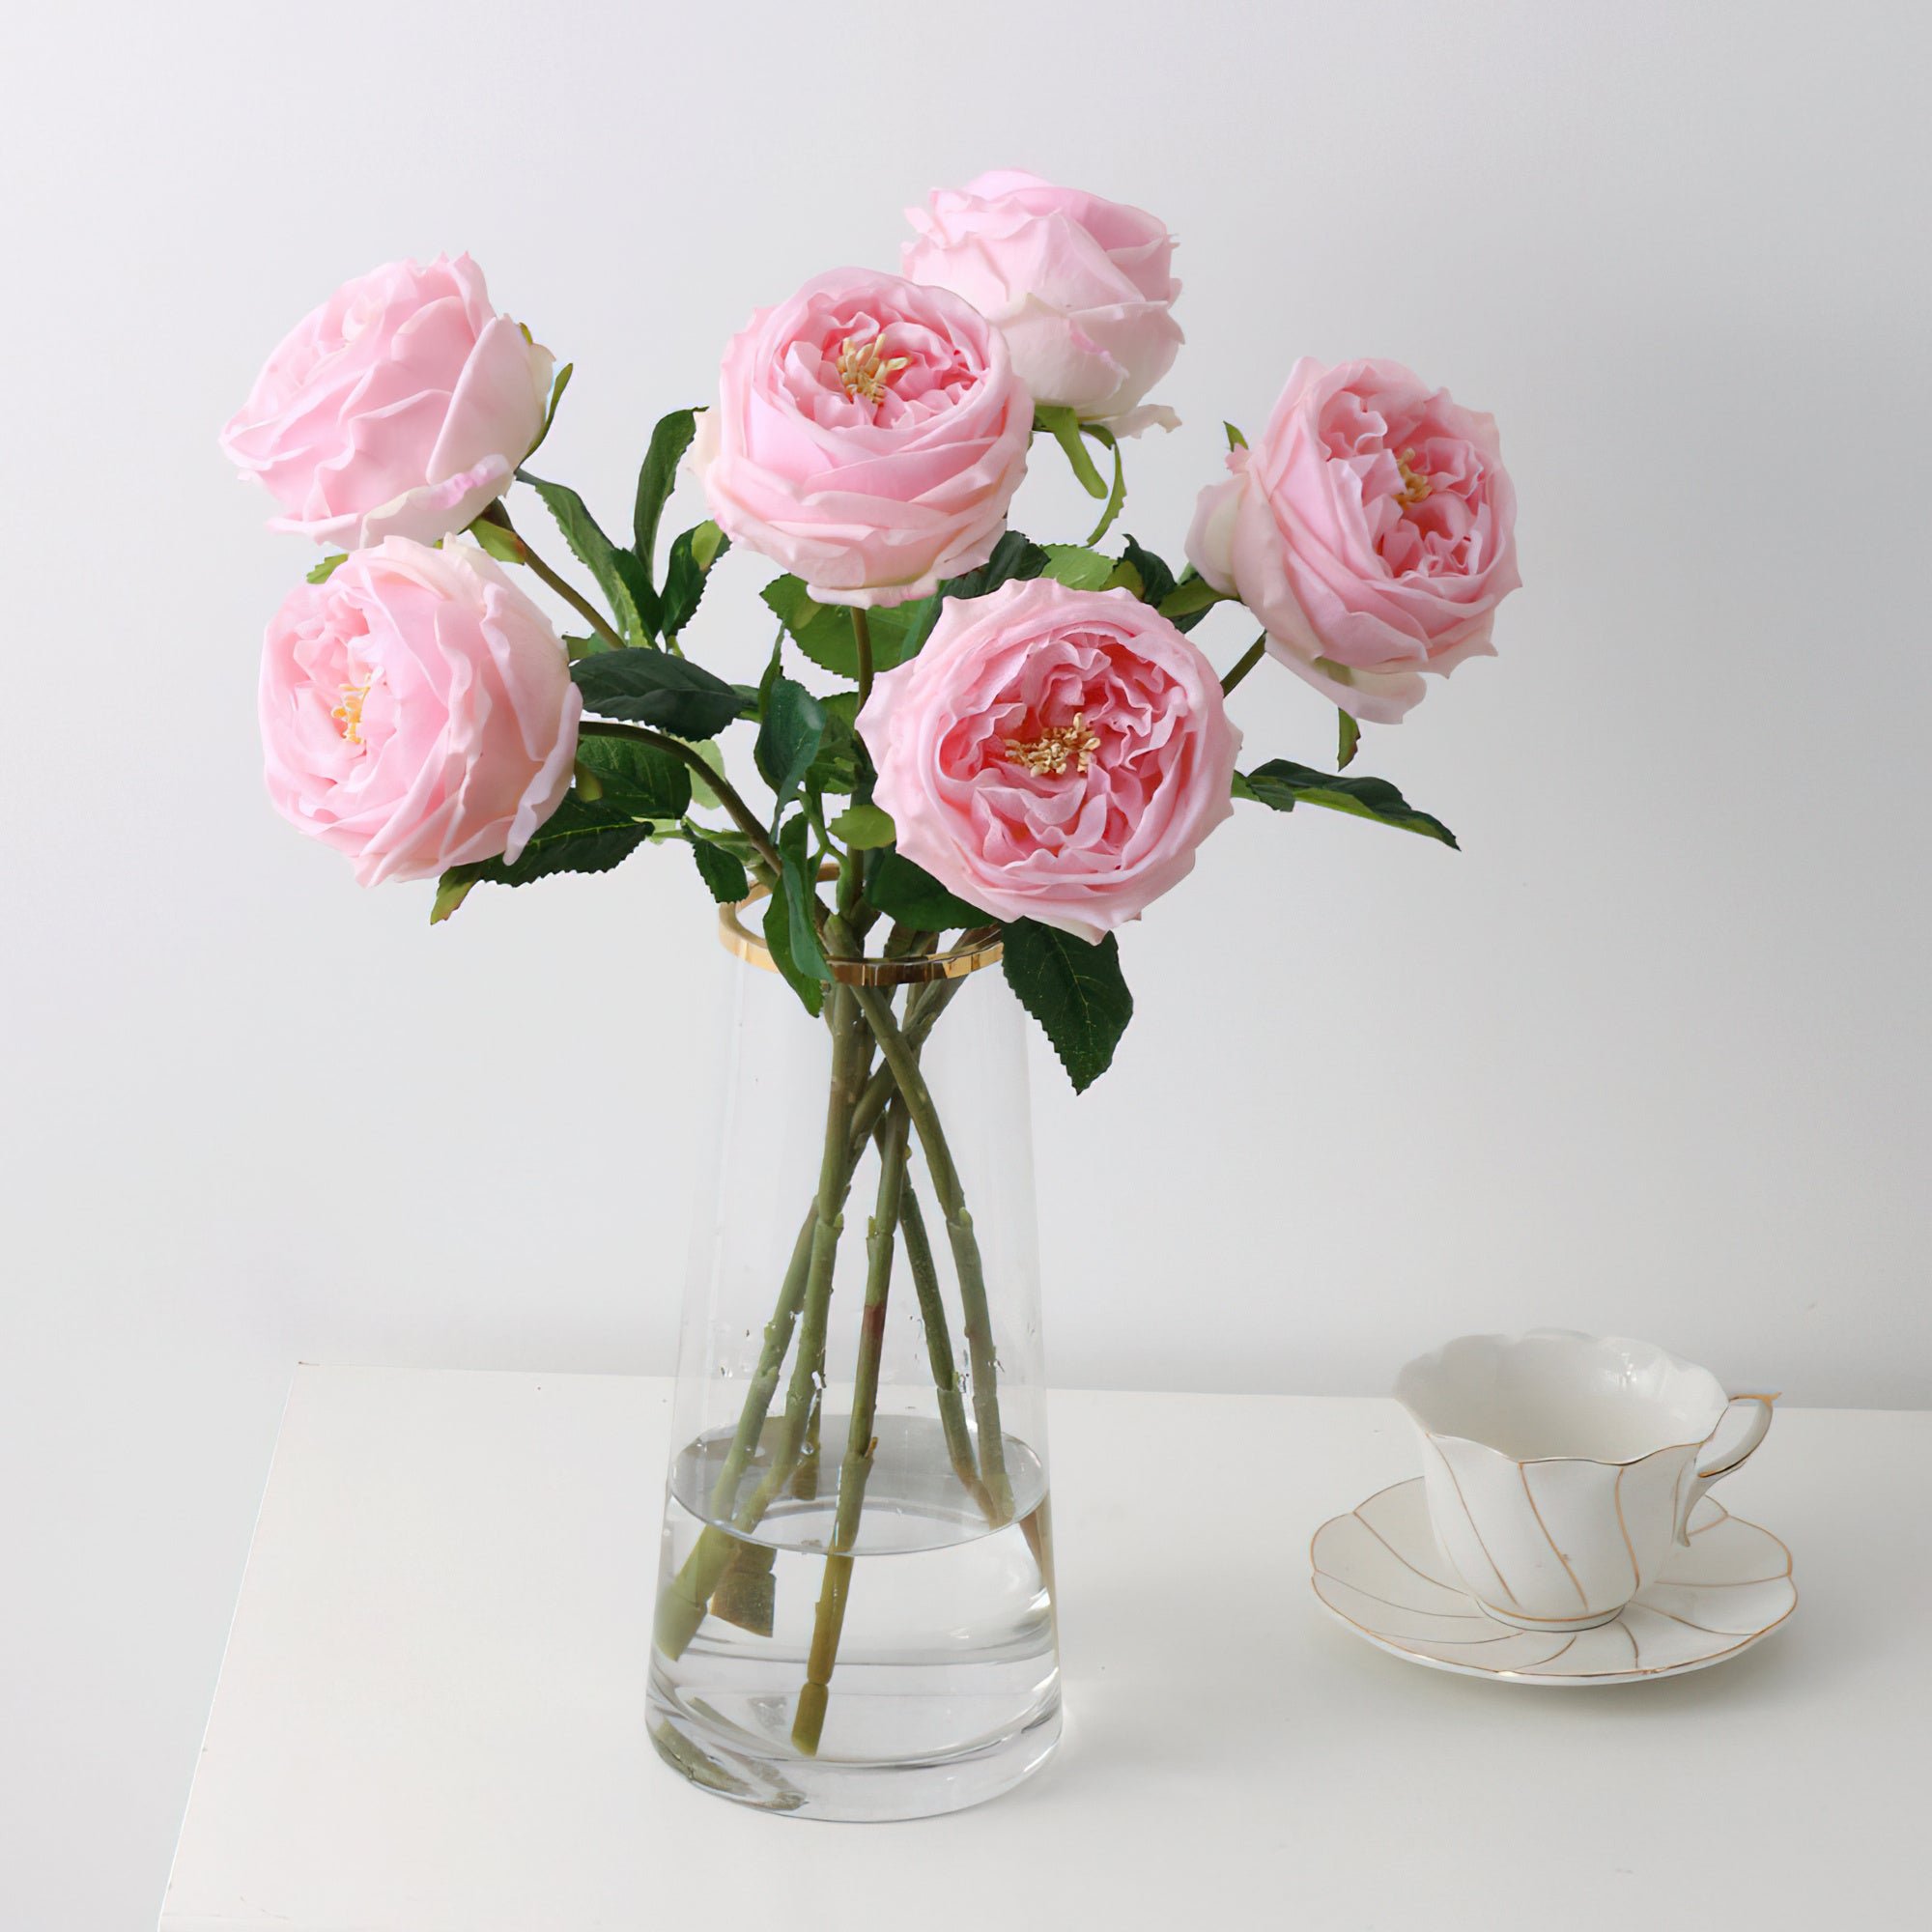 باقة أوستن الاصطناعية الفاخرة الوردية-زهور حرير واقعية لديكور الزفاف ودعائم التصوير الفوتوغرافي-مثالية لإعدادات الطاولات والهدايا